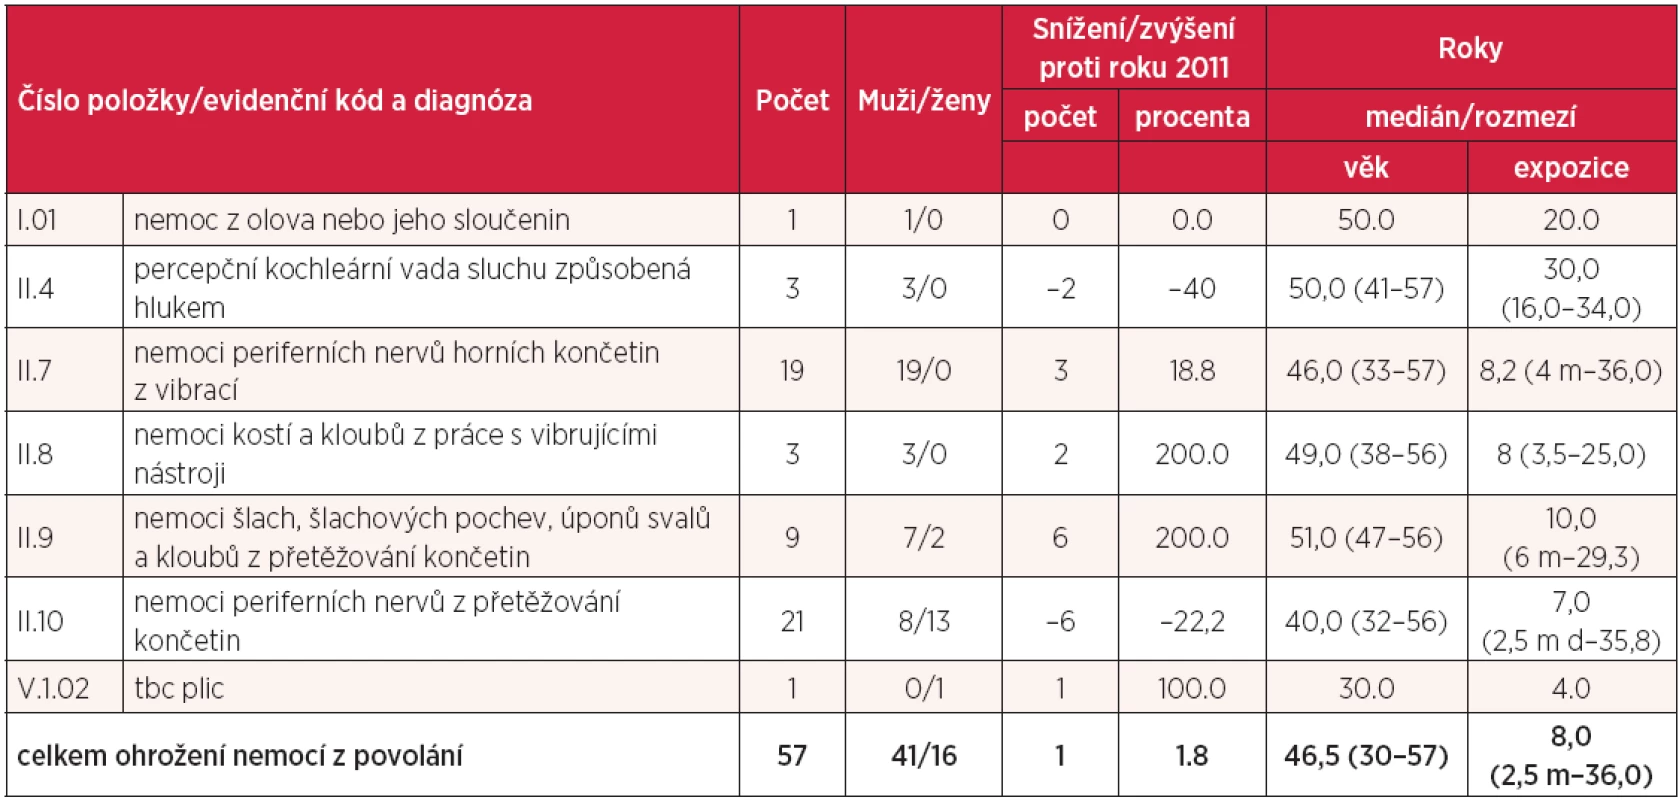 Ohrožení nemocí z povolání hlášená v České republice v roce 2012